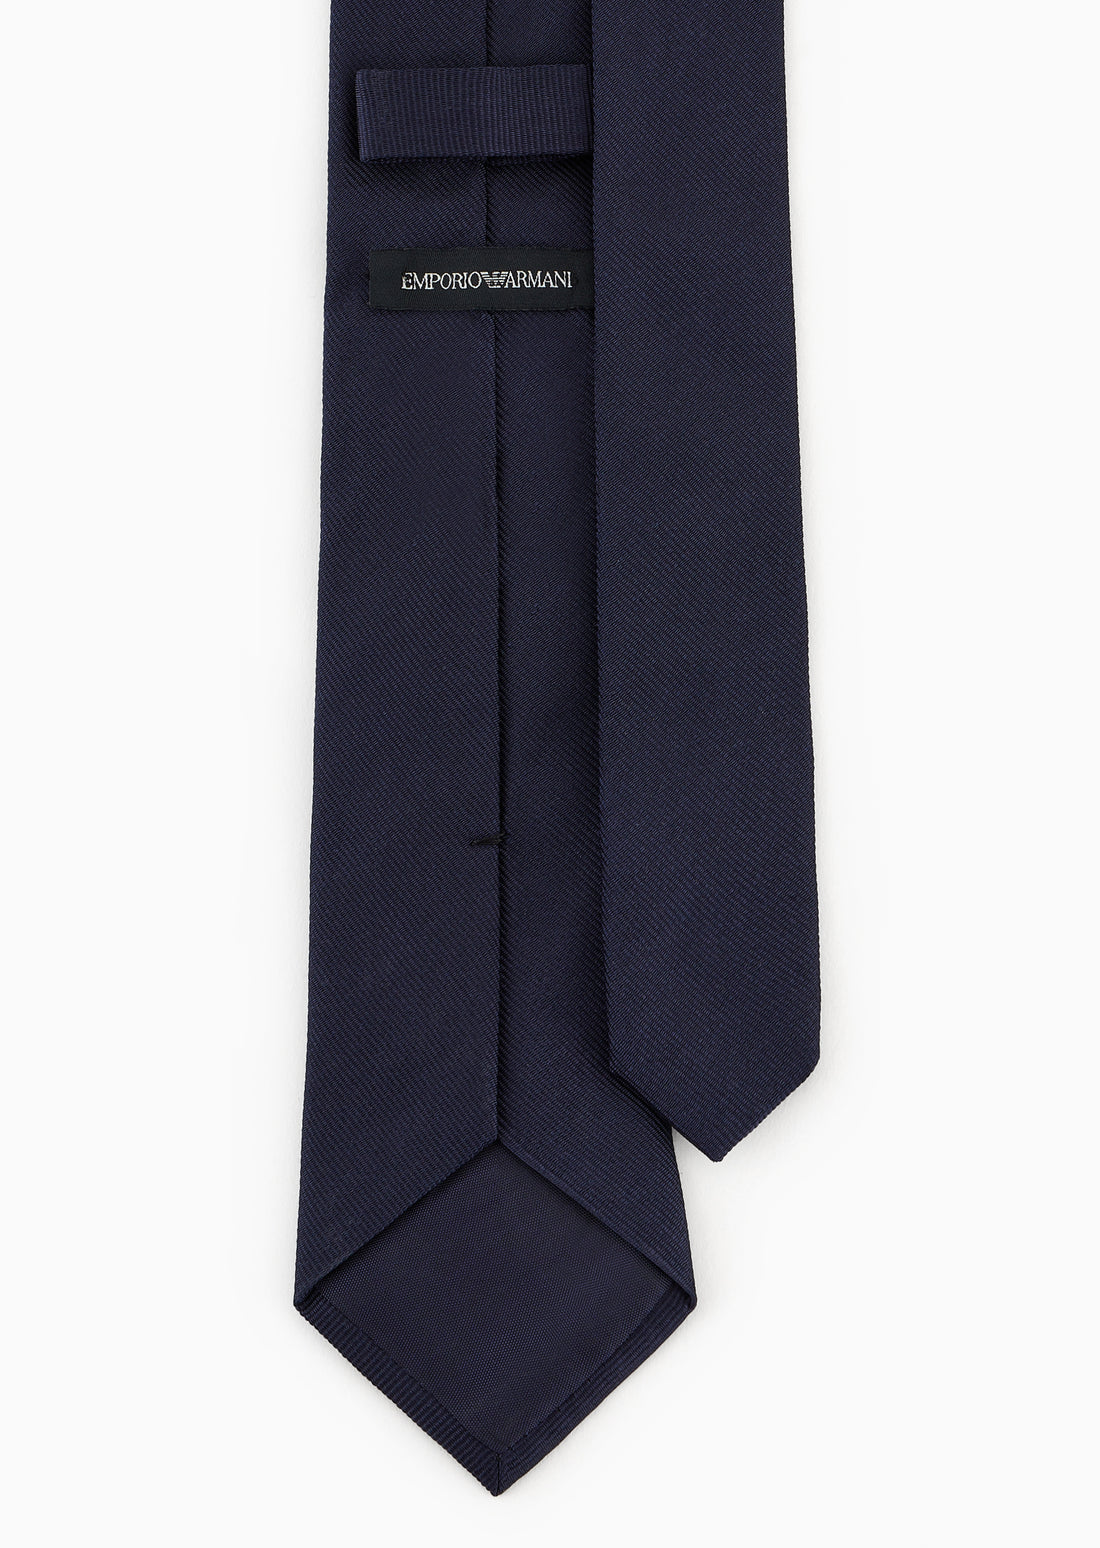 Emporio Armani Woven Tie Style: 409549